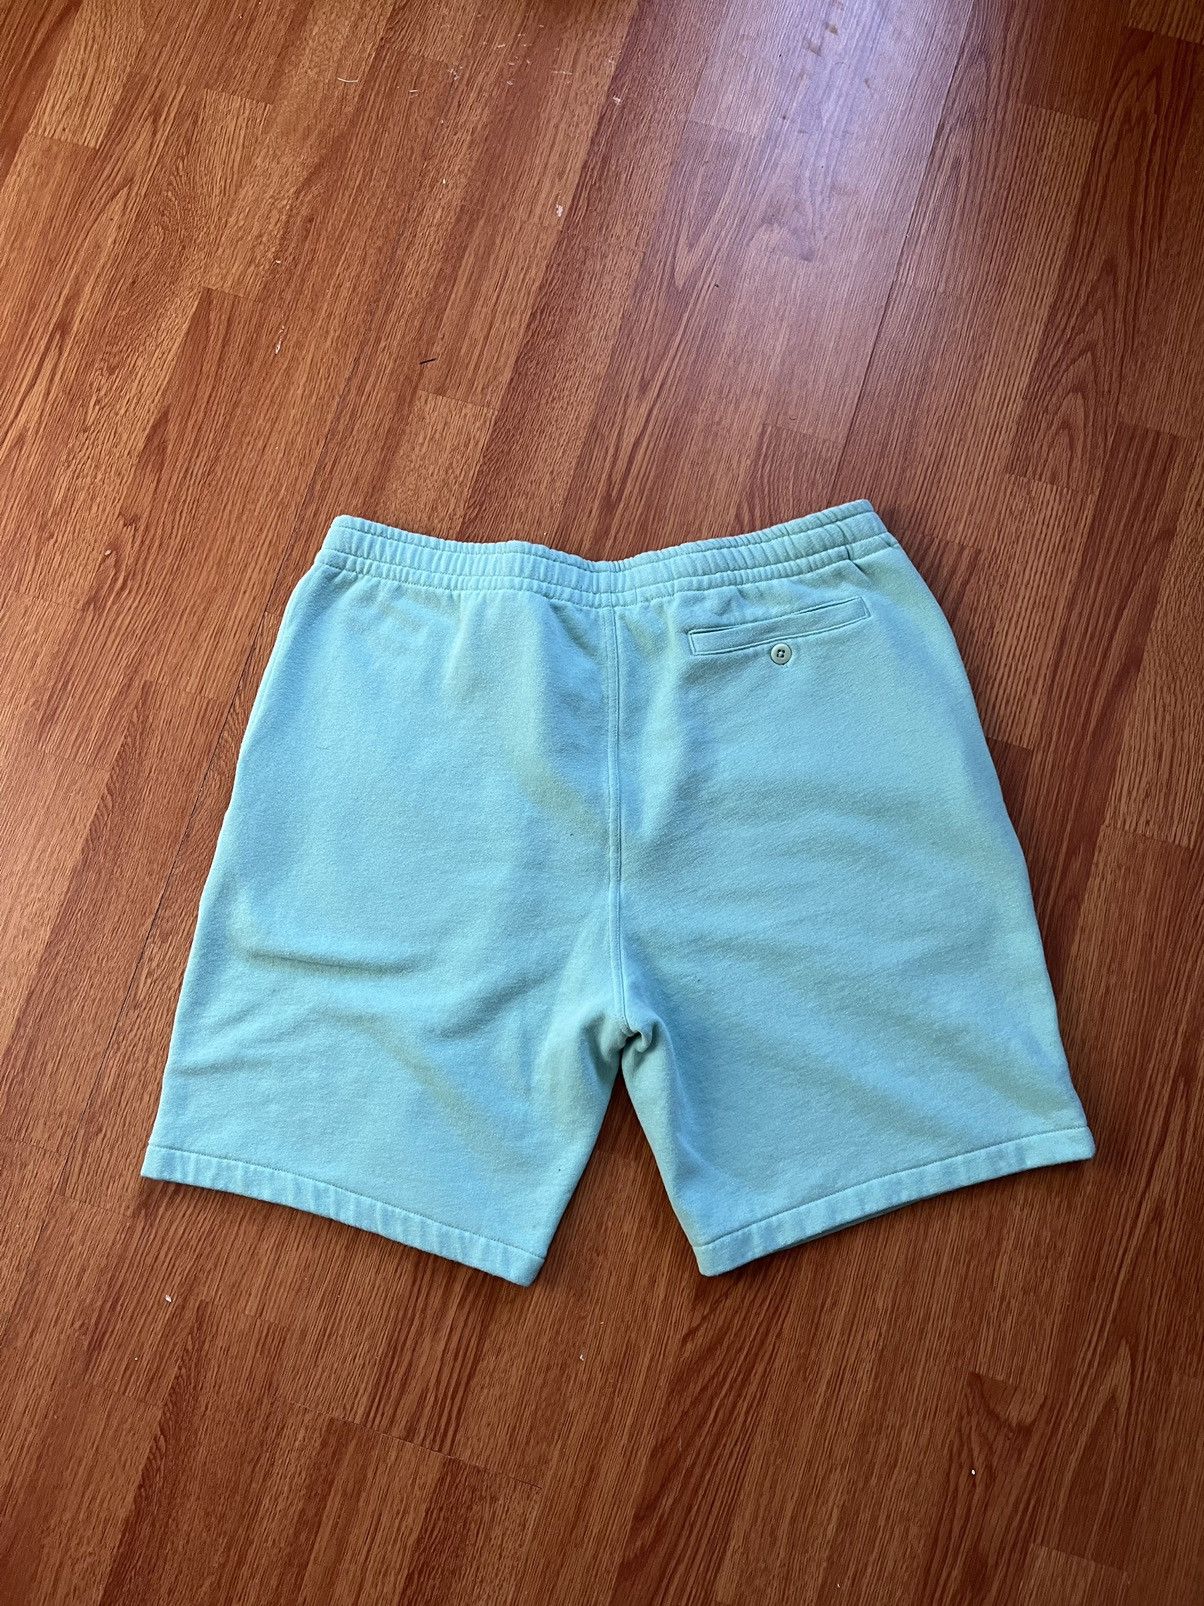 Polo Ralph Lauren Polo shorts Size US 36 / EU 52 - 4 Preview